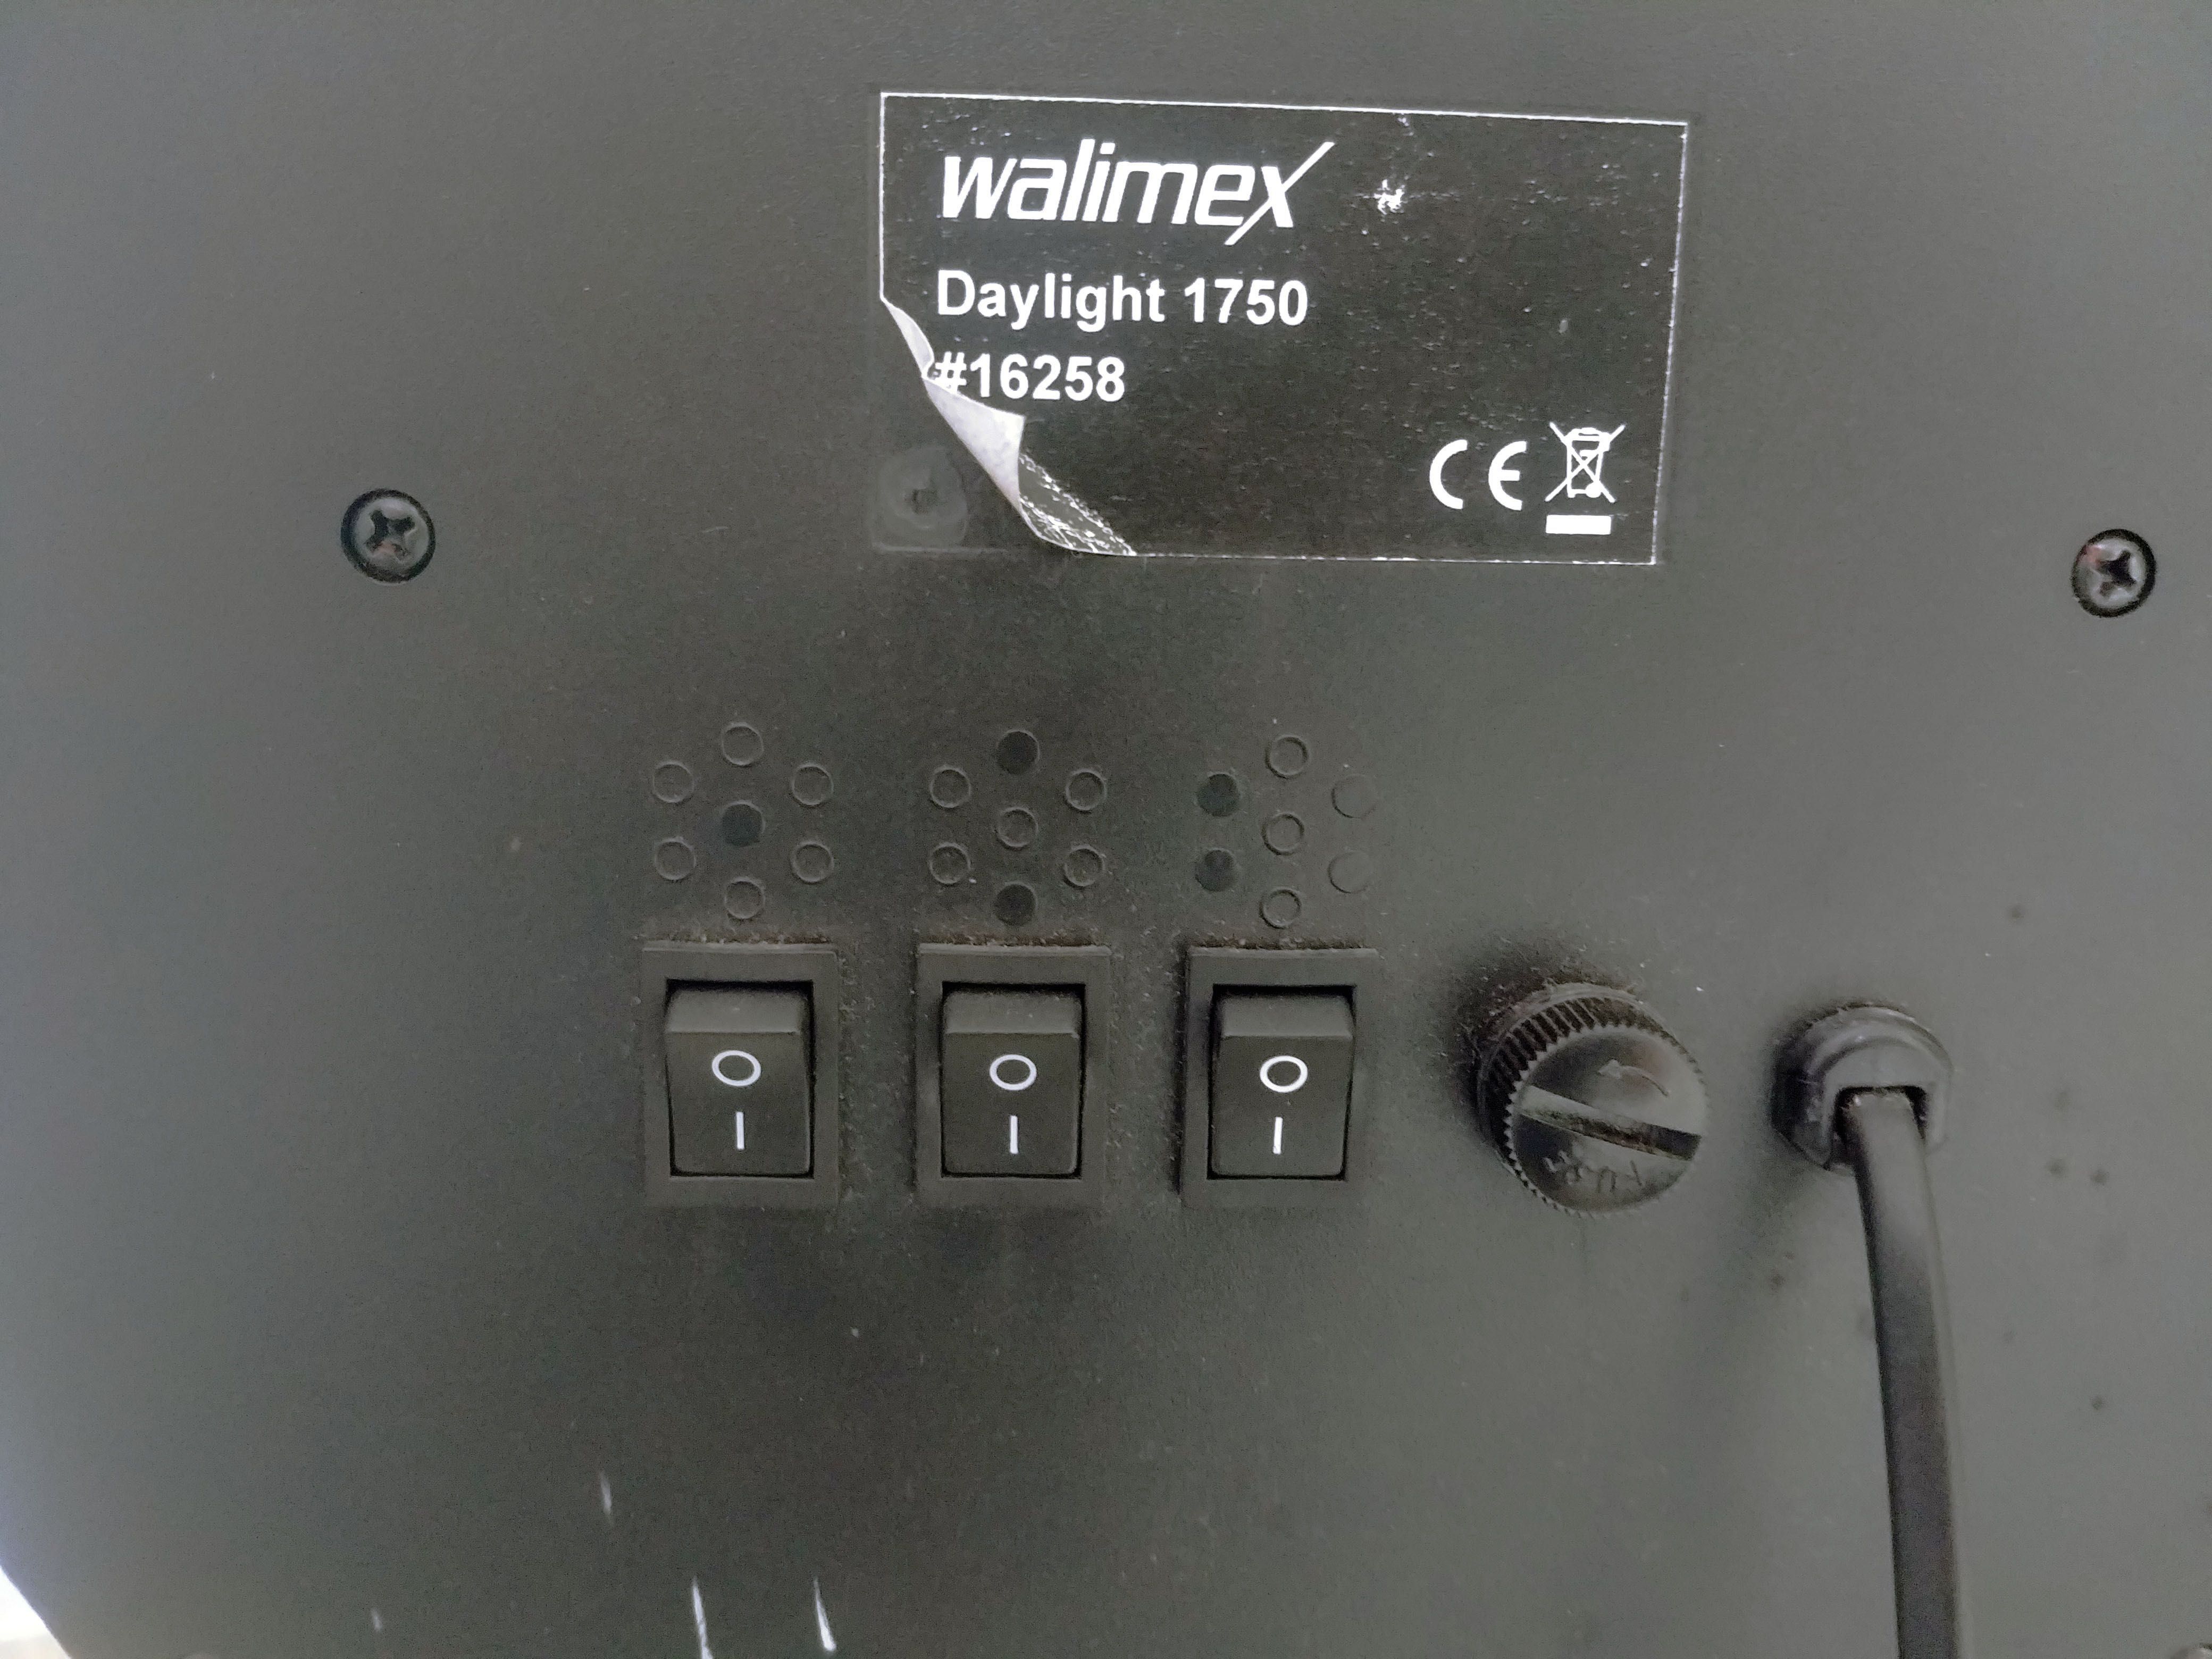 2 Projetores Wallimex Daylight 1750w